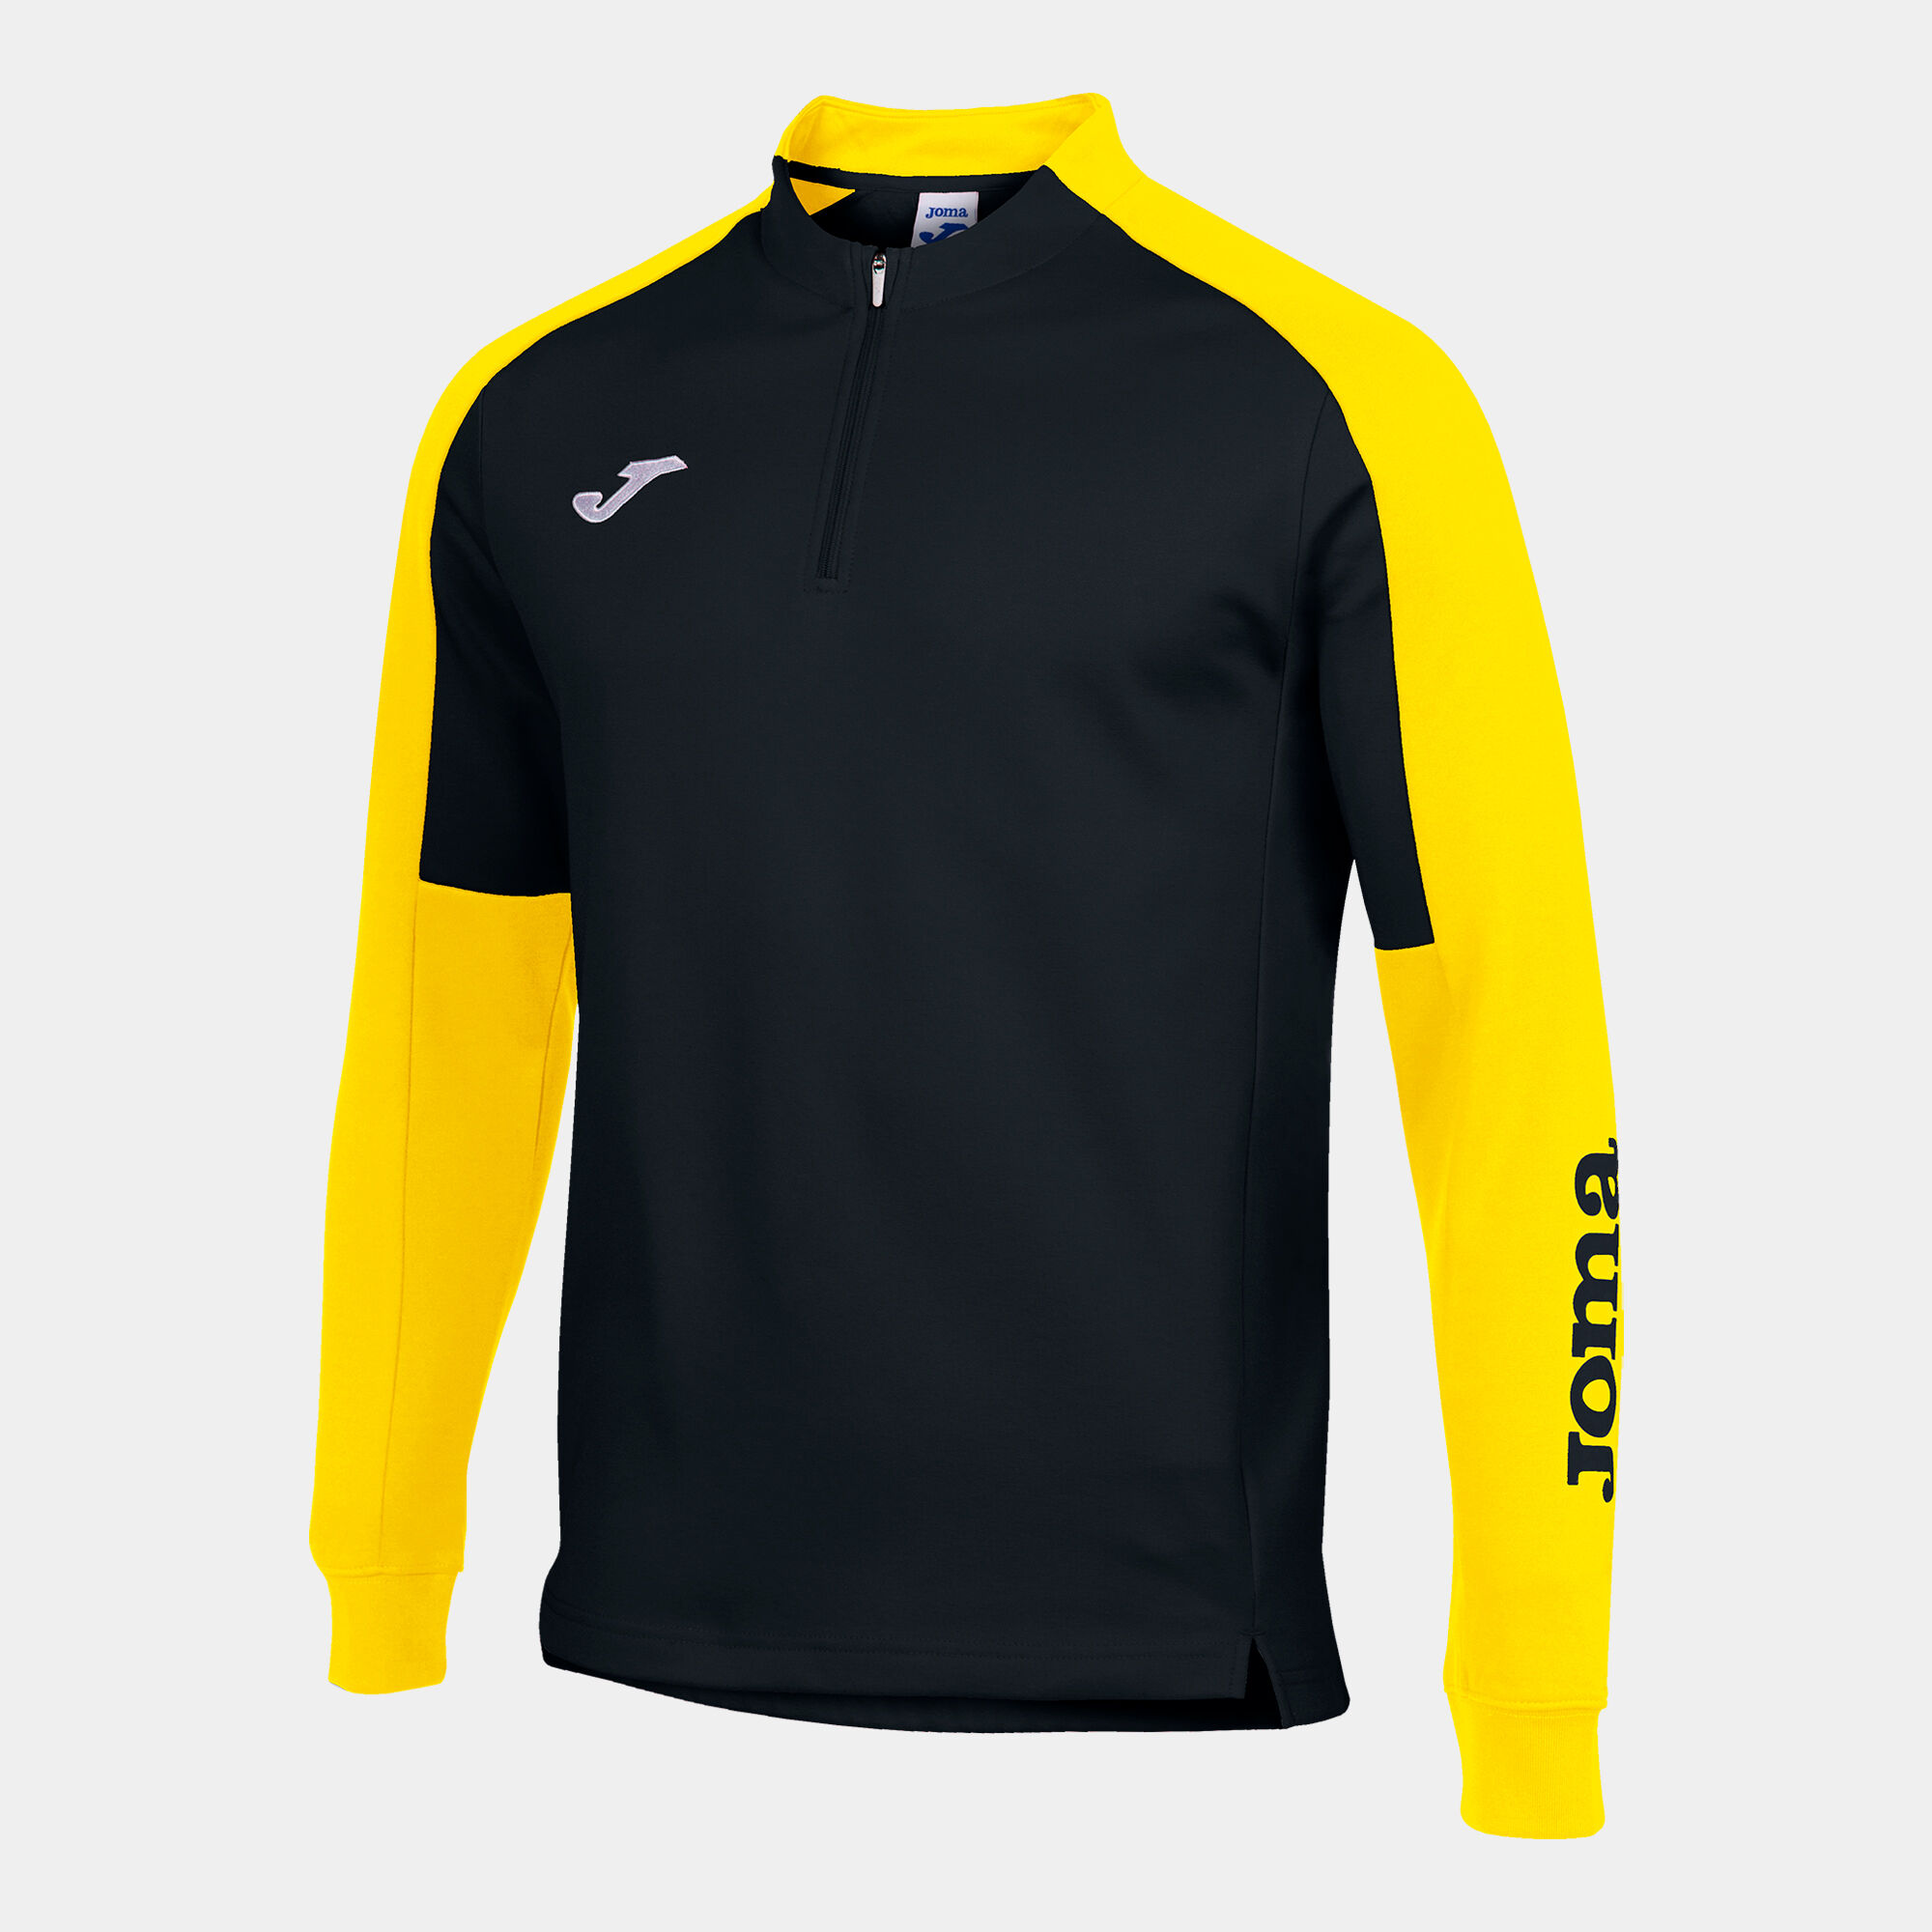 Sweat-shirt homme Eco Championship noir jaune